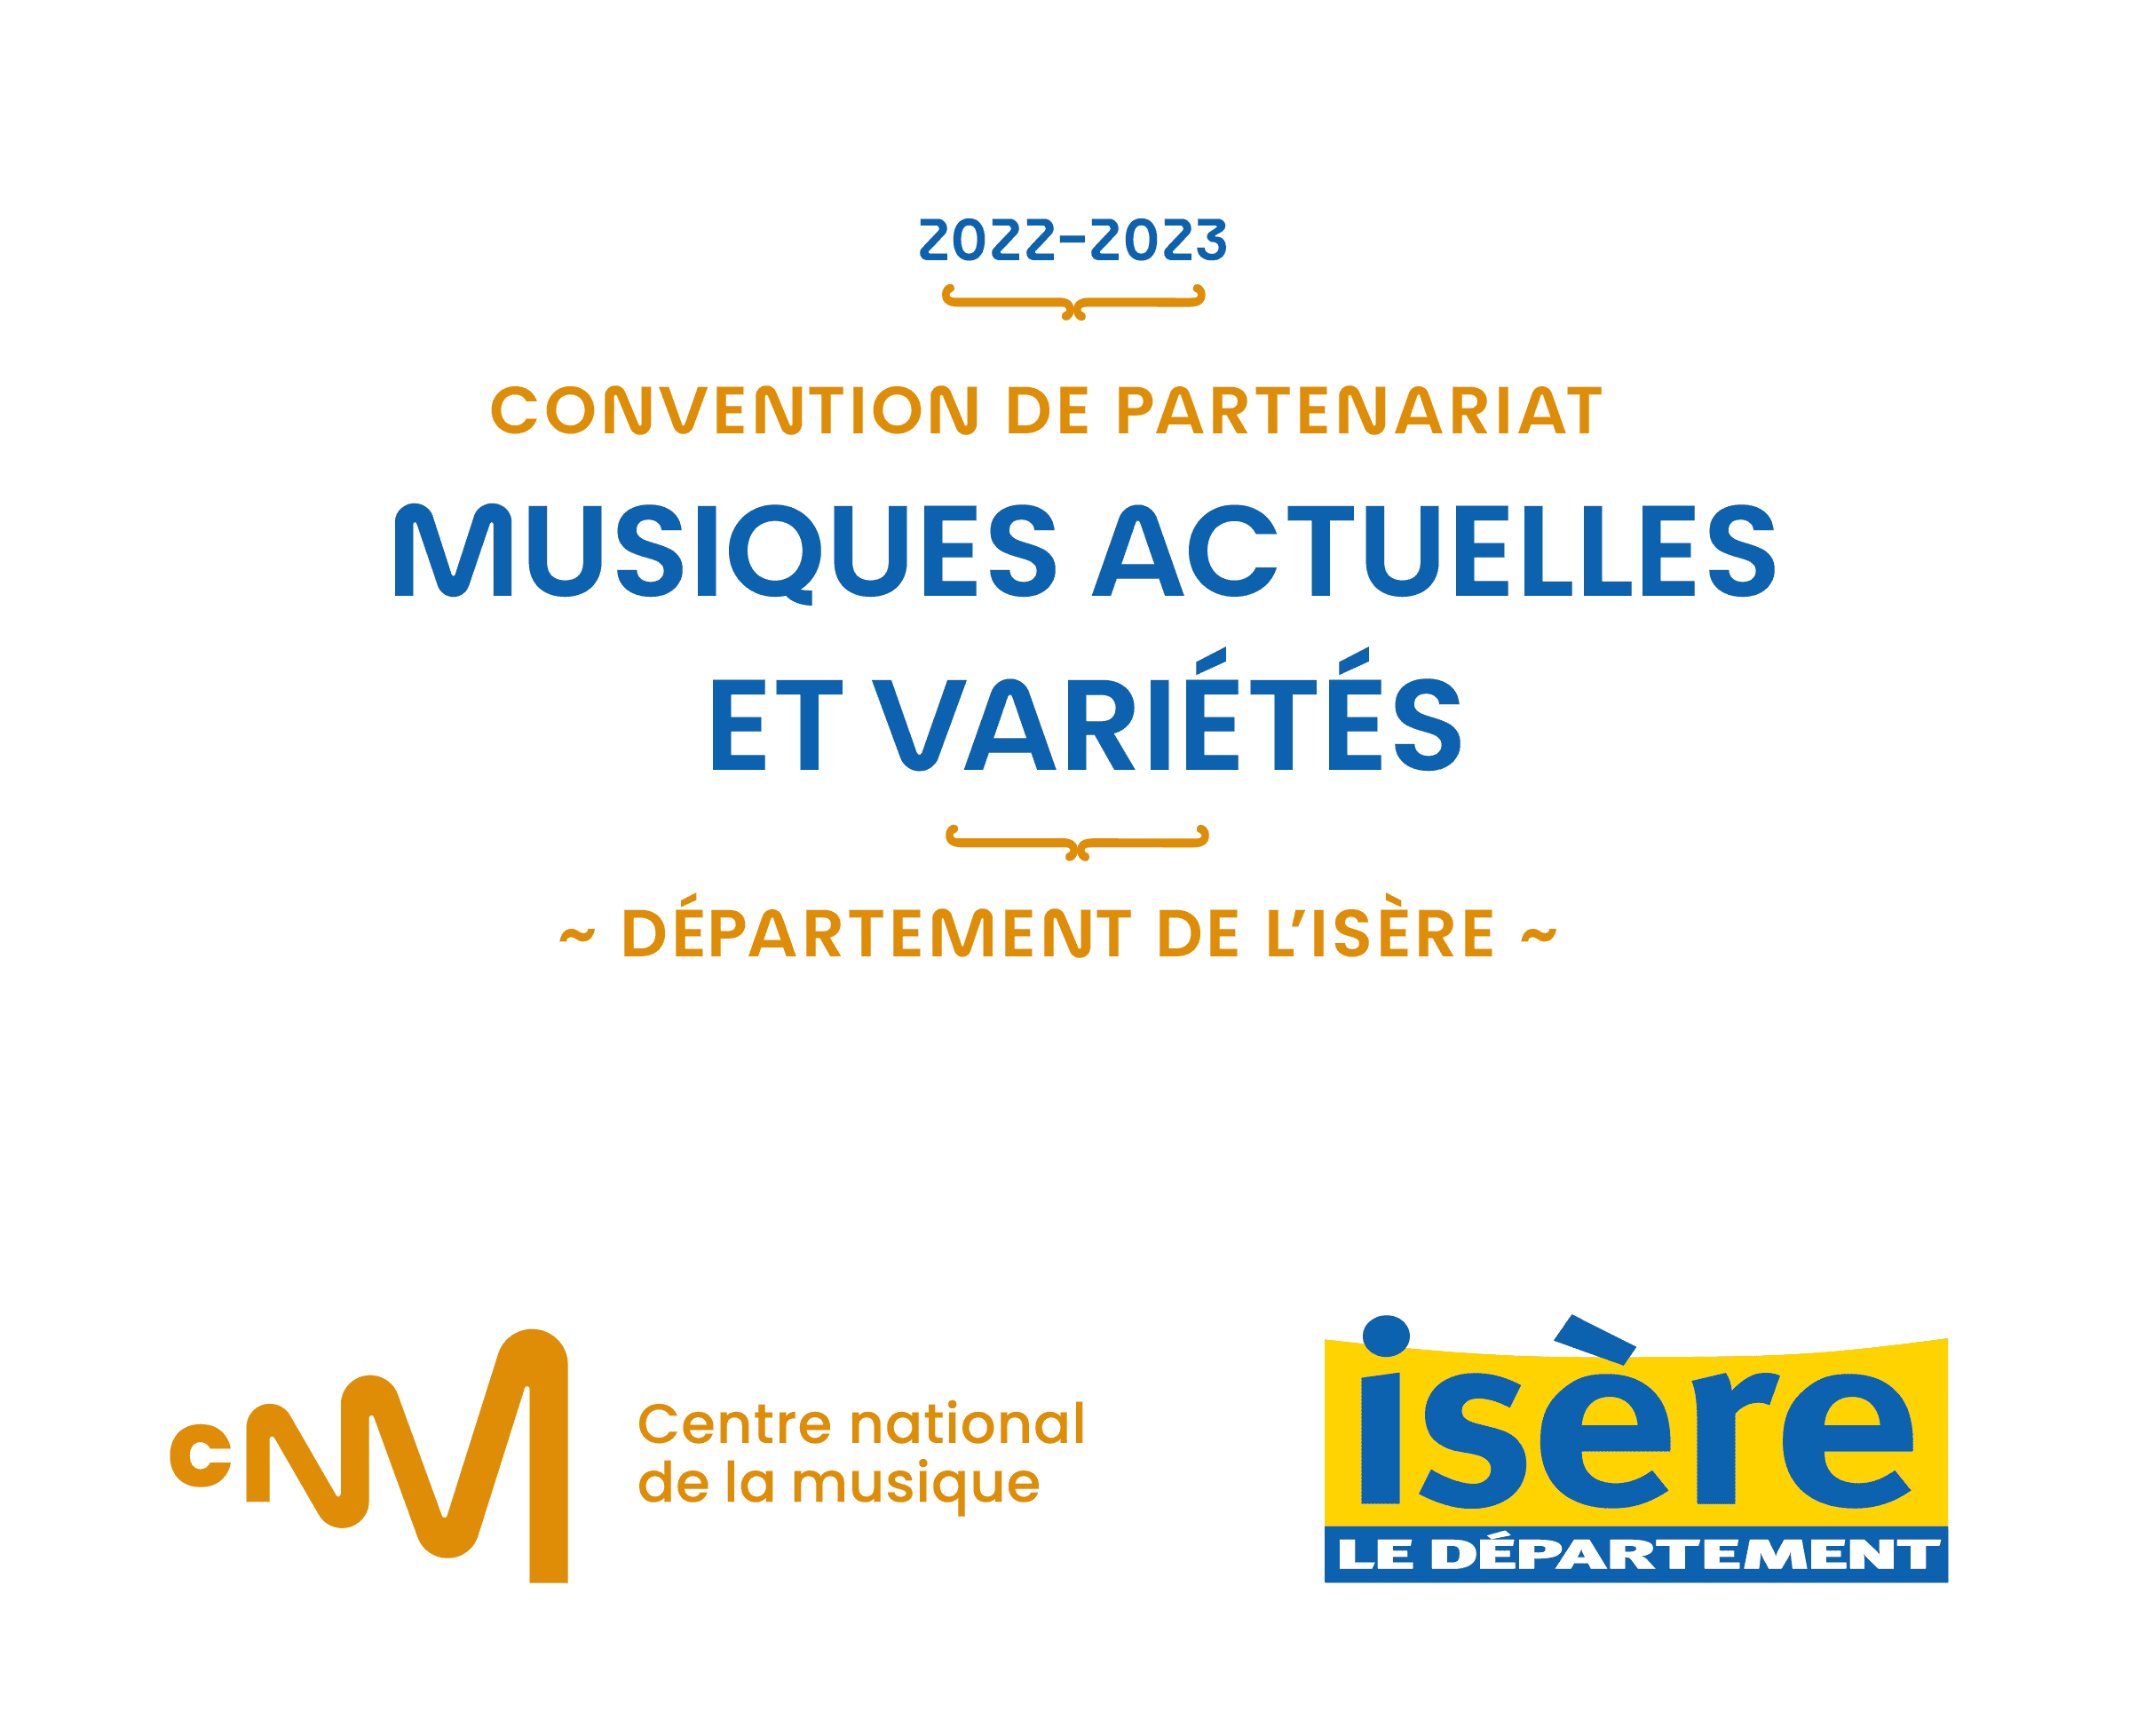 Le Centre national de la musique et le Département de l’Isère signent une convention de partenariat visant à soutenir la filière iséroise de la musique et des variétés